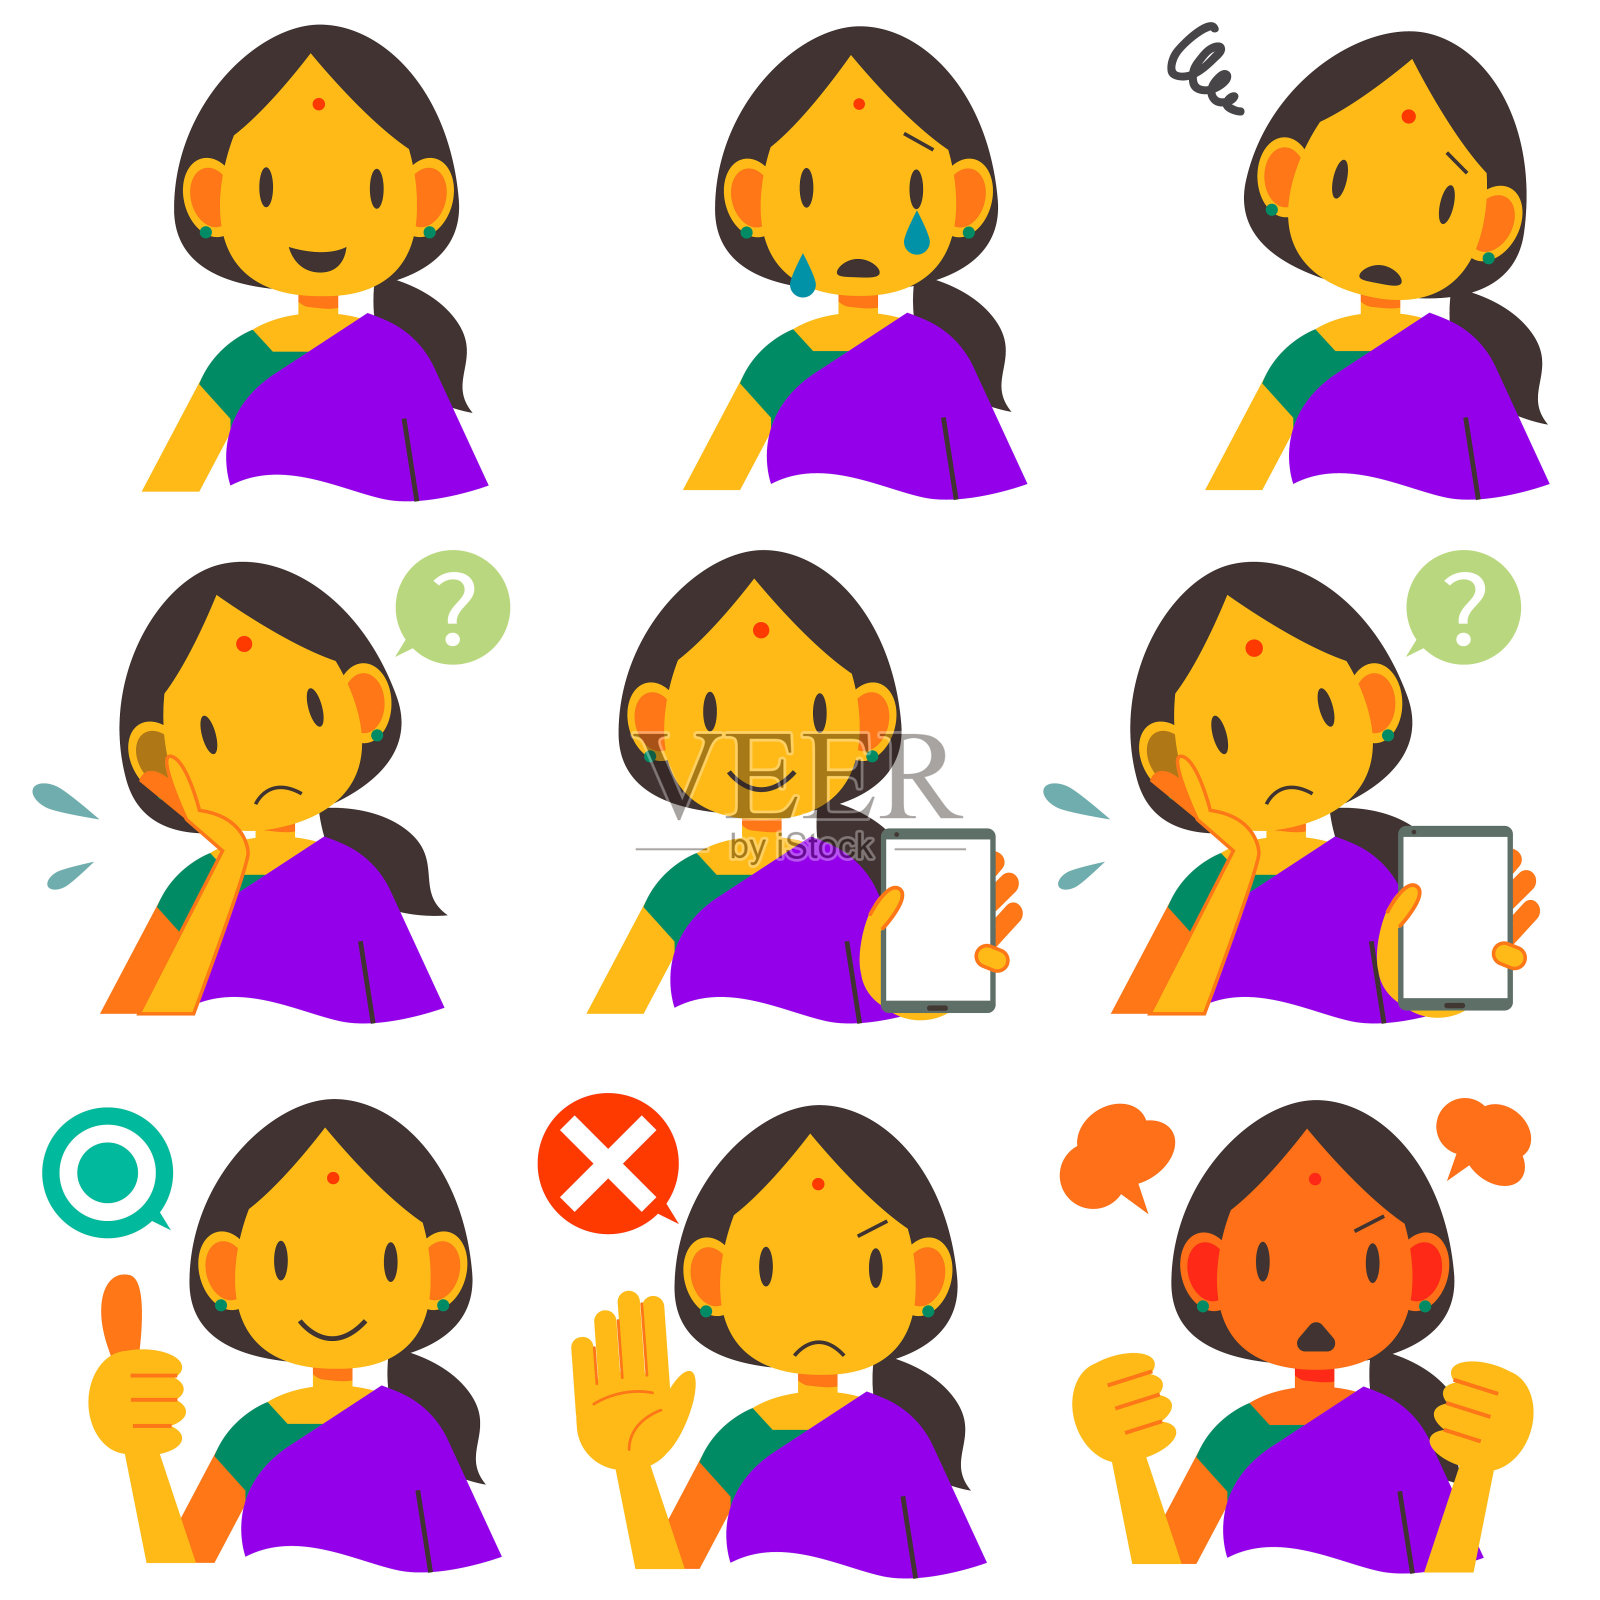 印度女性表情系列插画图片素材